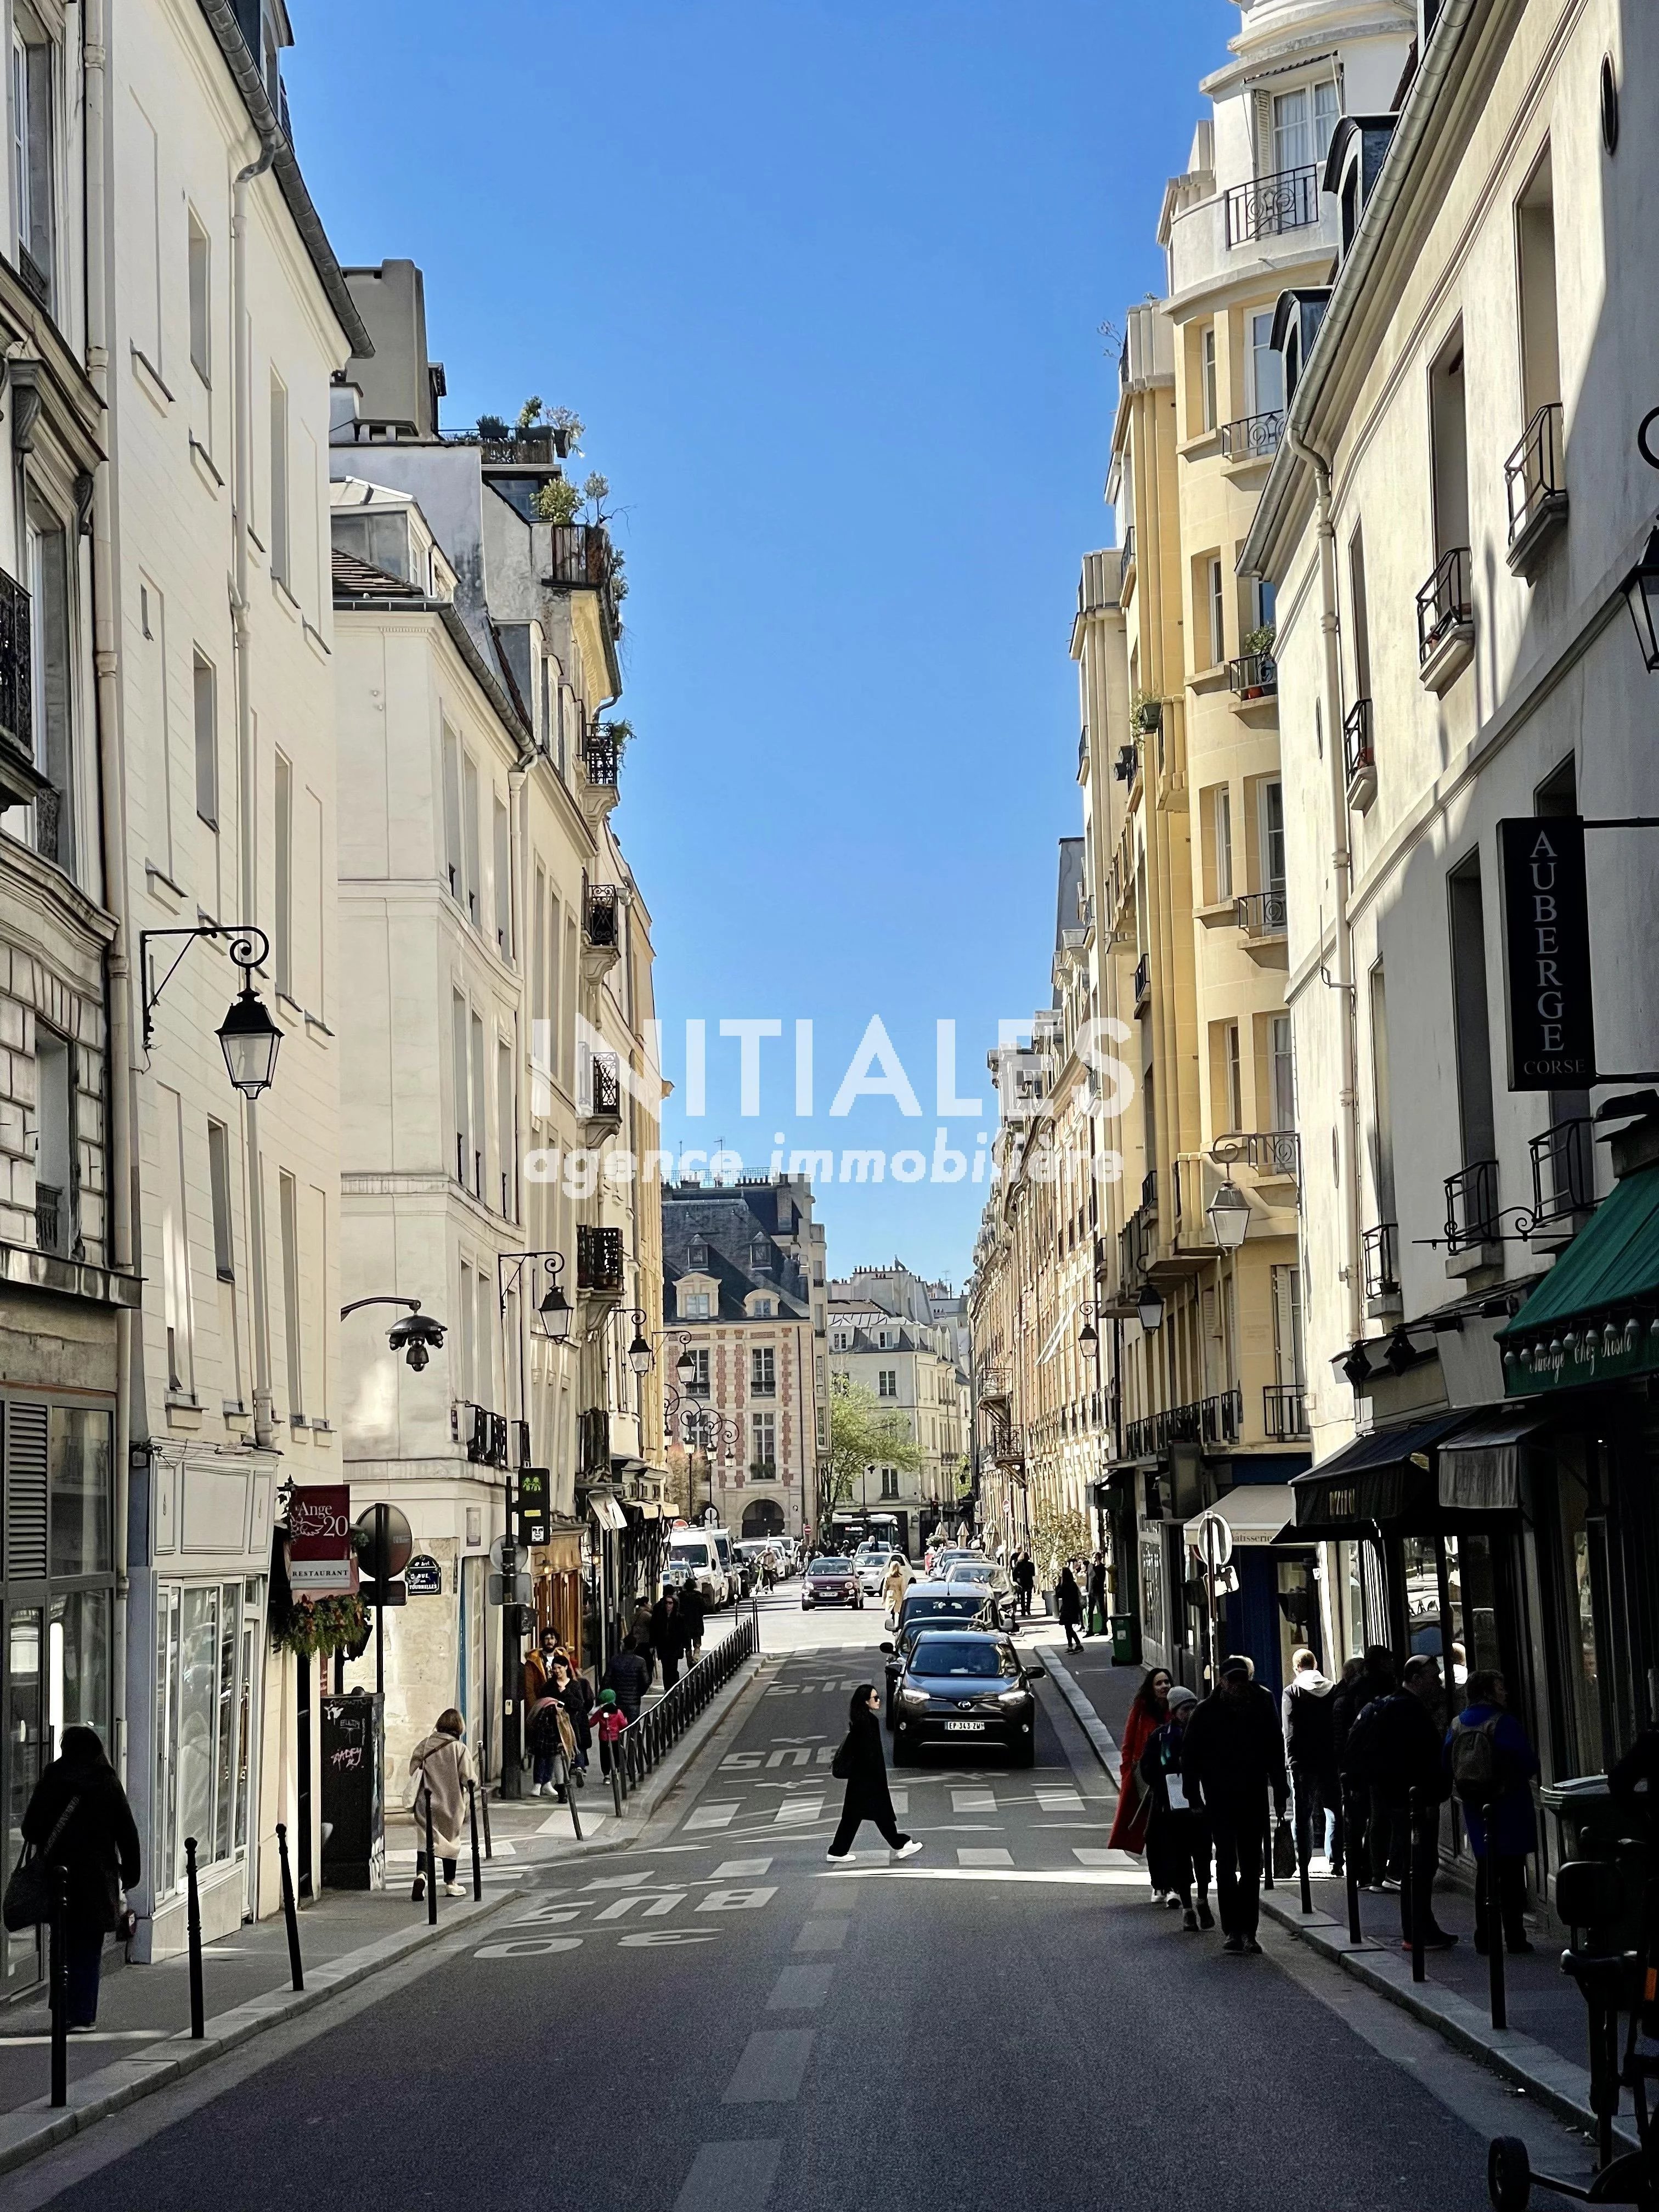 Sale Apartment - Paris 4th (Paris 4ème) Arsenal